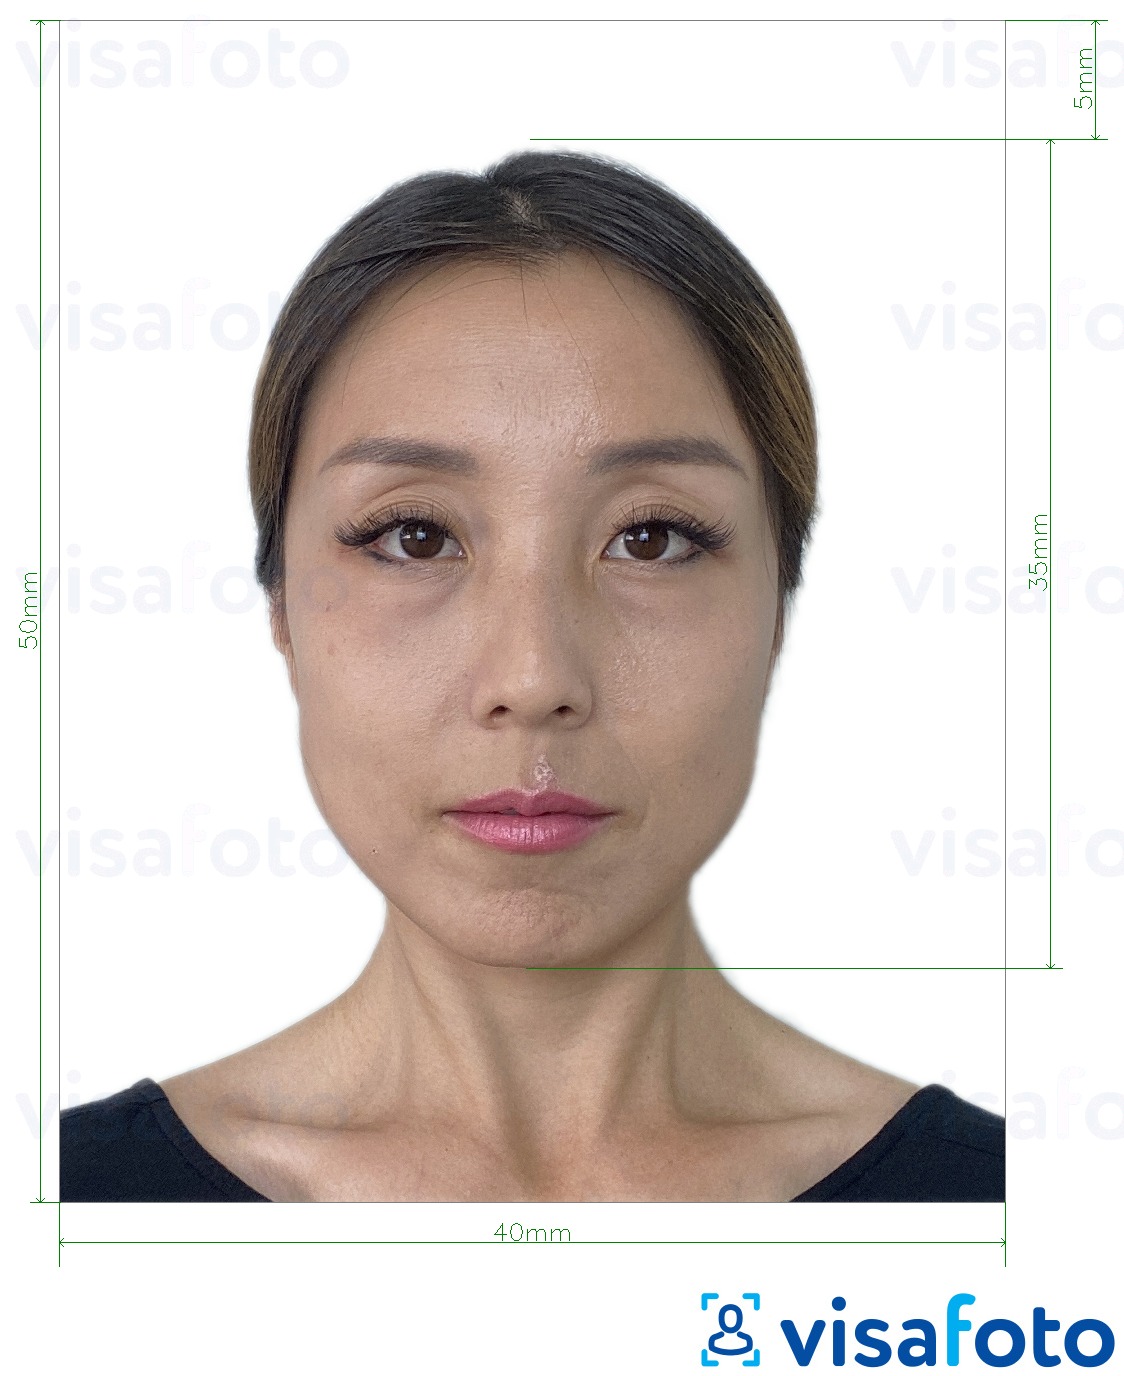 Nuotraukos pavyzdys Honkongo asmens tapatybės kortelė 4x5 cm su tikslaus dydžio specifikacija